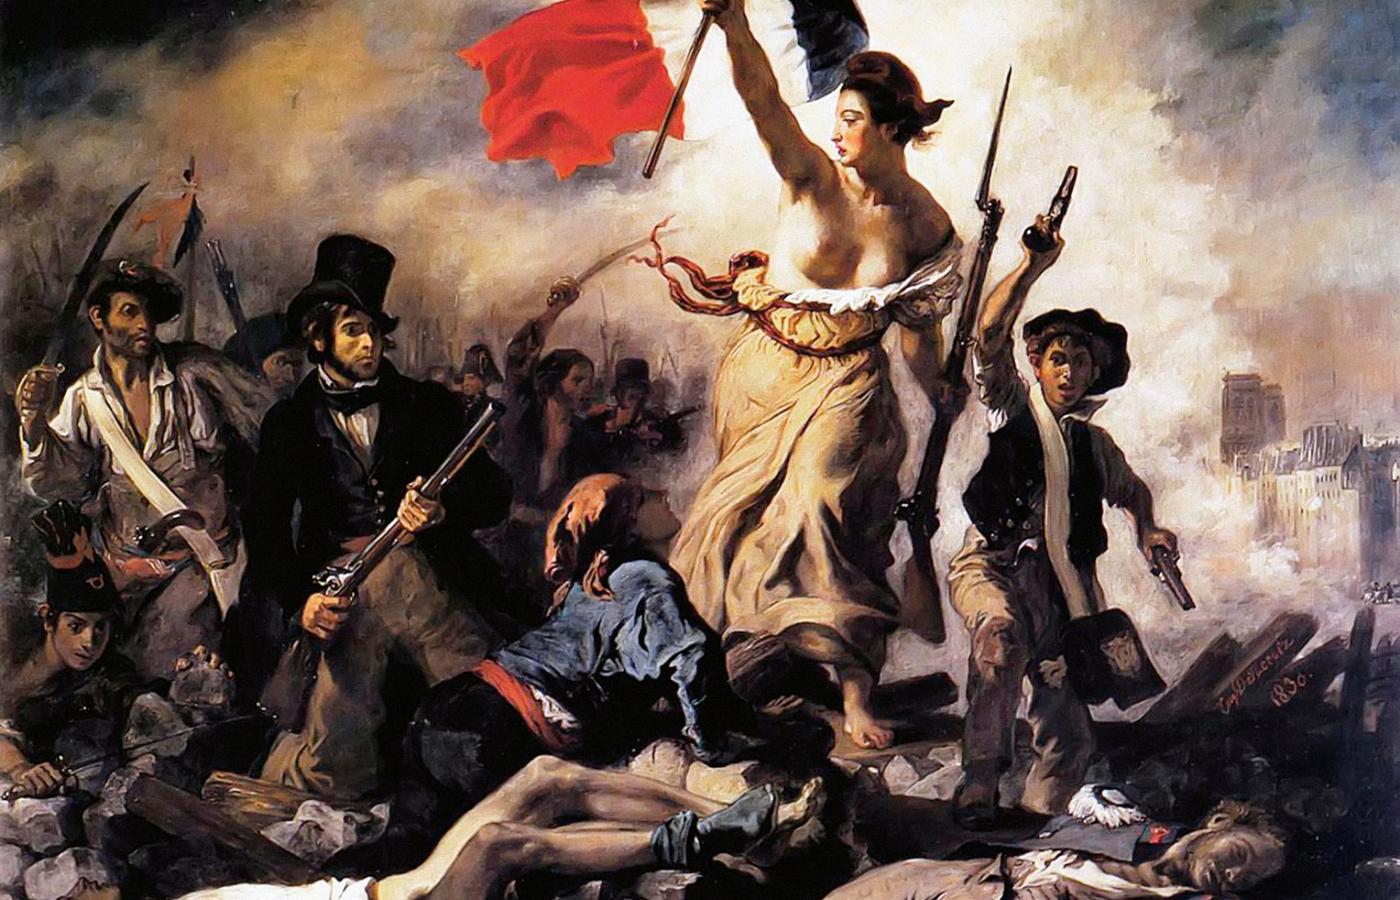 Eugène Delacroix, „Wolność wiodąca lud na barykady”, rewolucja lipcowa 1830 r. na gorąco zalegoryzowana przez mistrza romantyzmu.